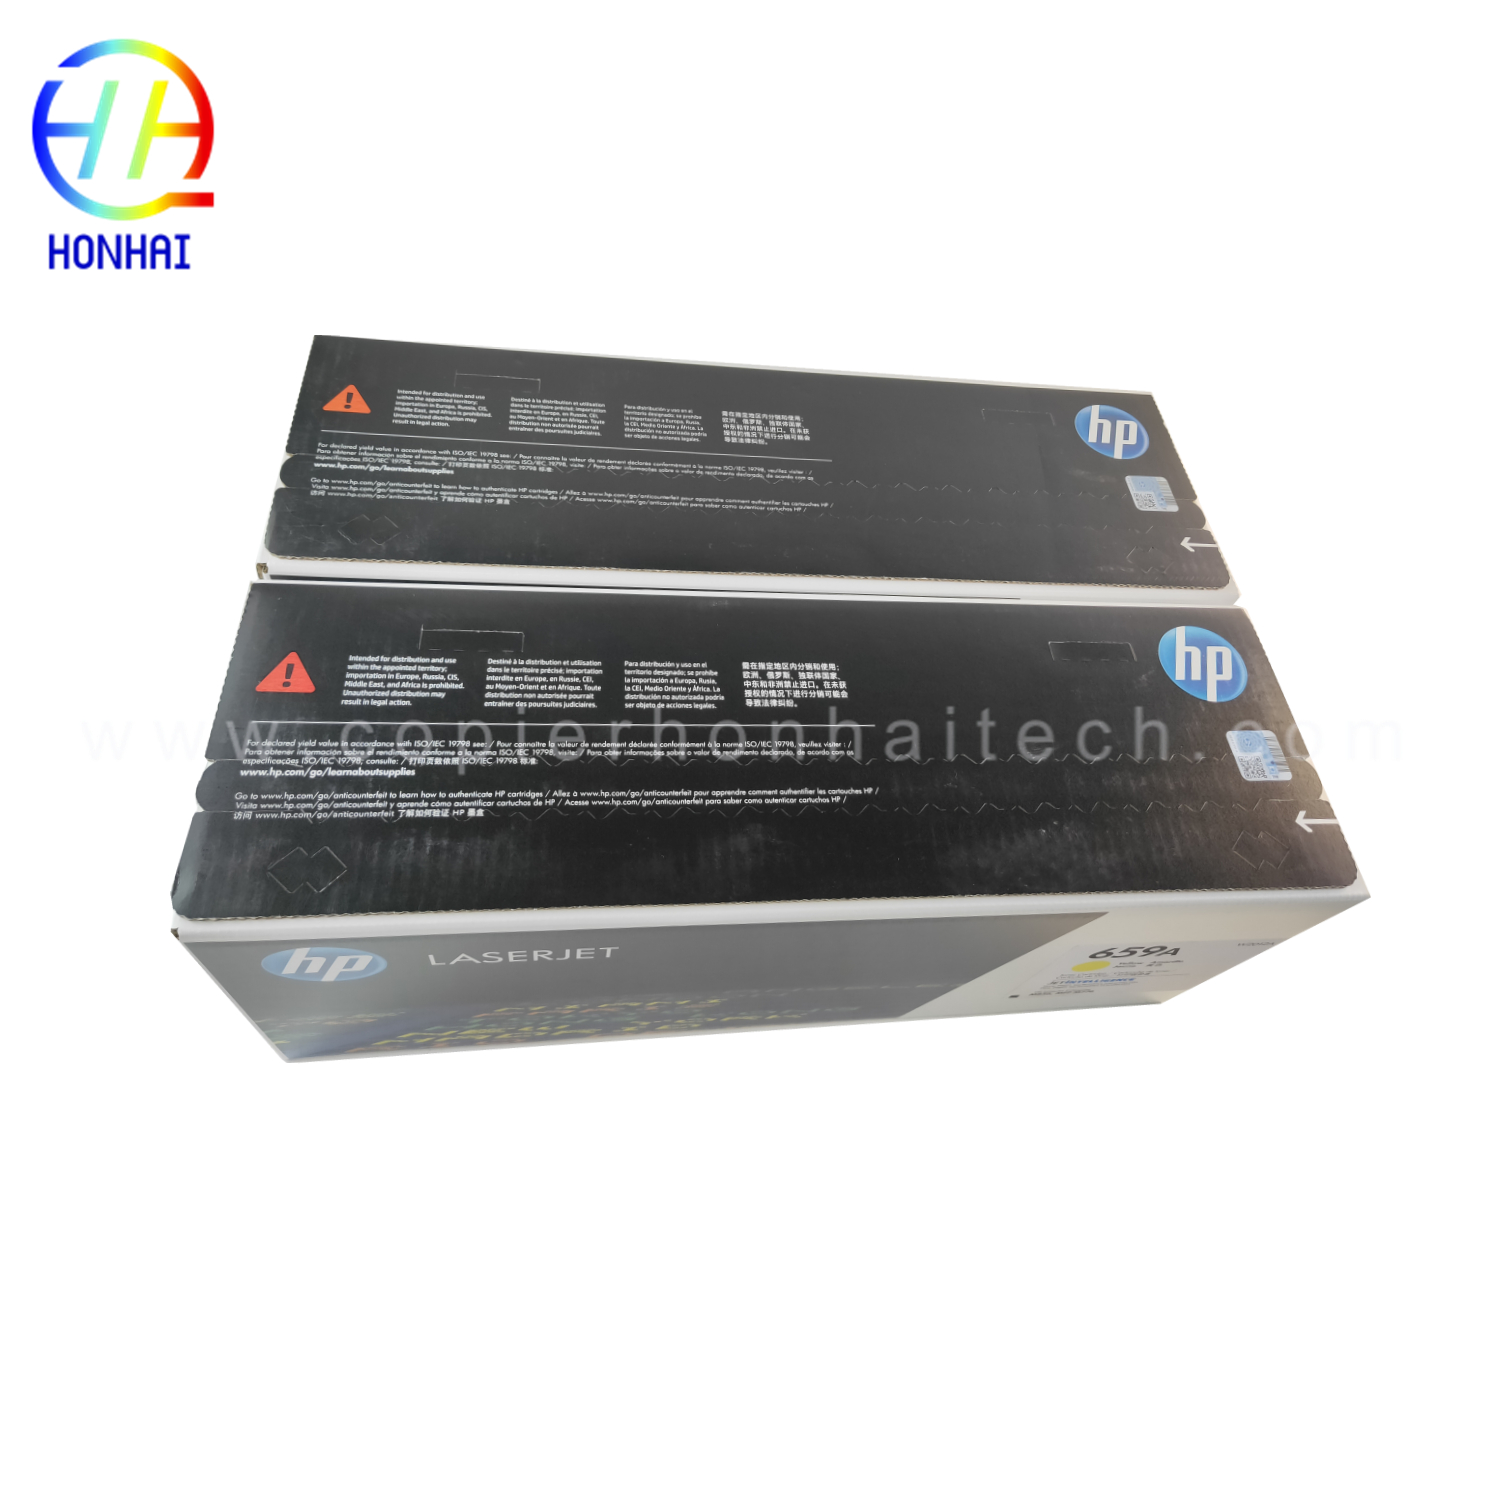 https://www.copierhonhaitech.com/toner-cartridge-for-hp-659a-color-laserjet-enterprise-flow-mfp-m776z-m776zs-m776dn-product/